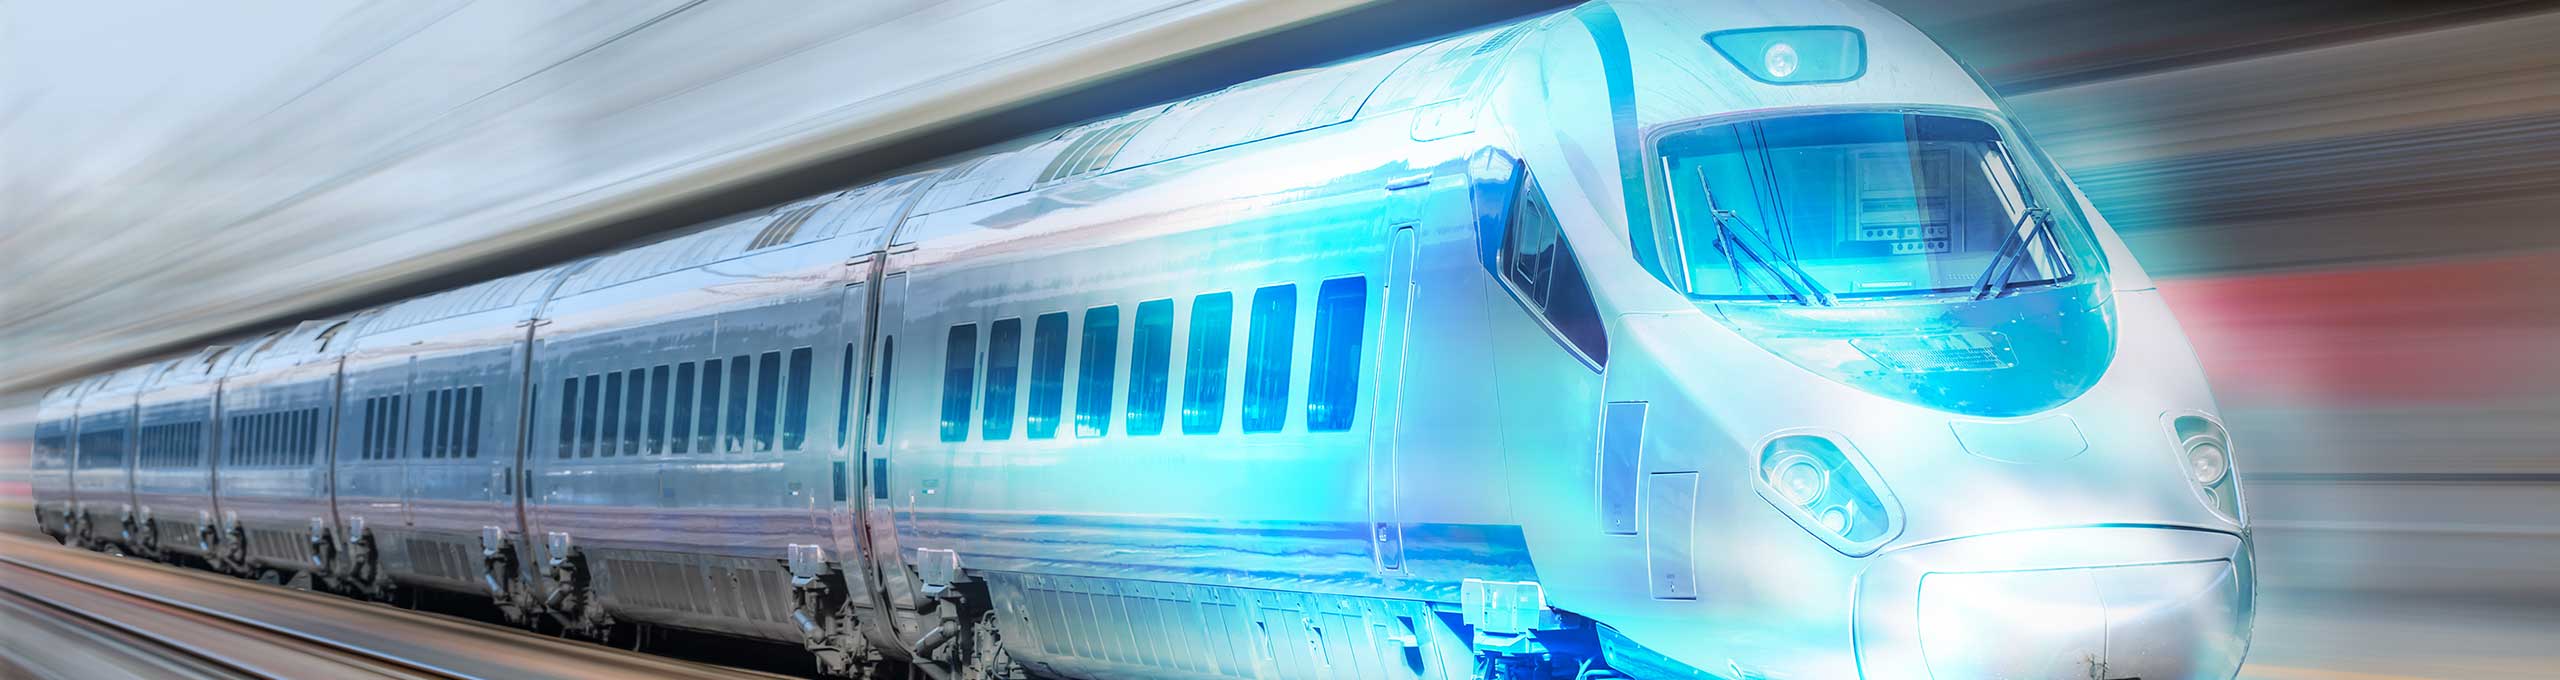 Immagine stilizzata di un treno proiettile, che sfreccia sui binari verso il futuro